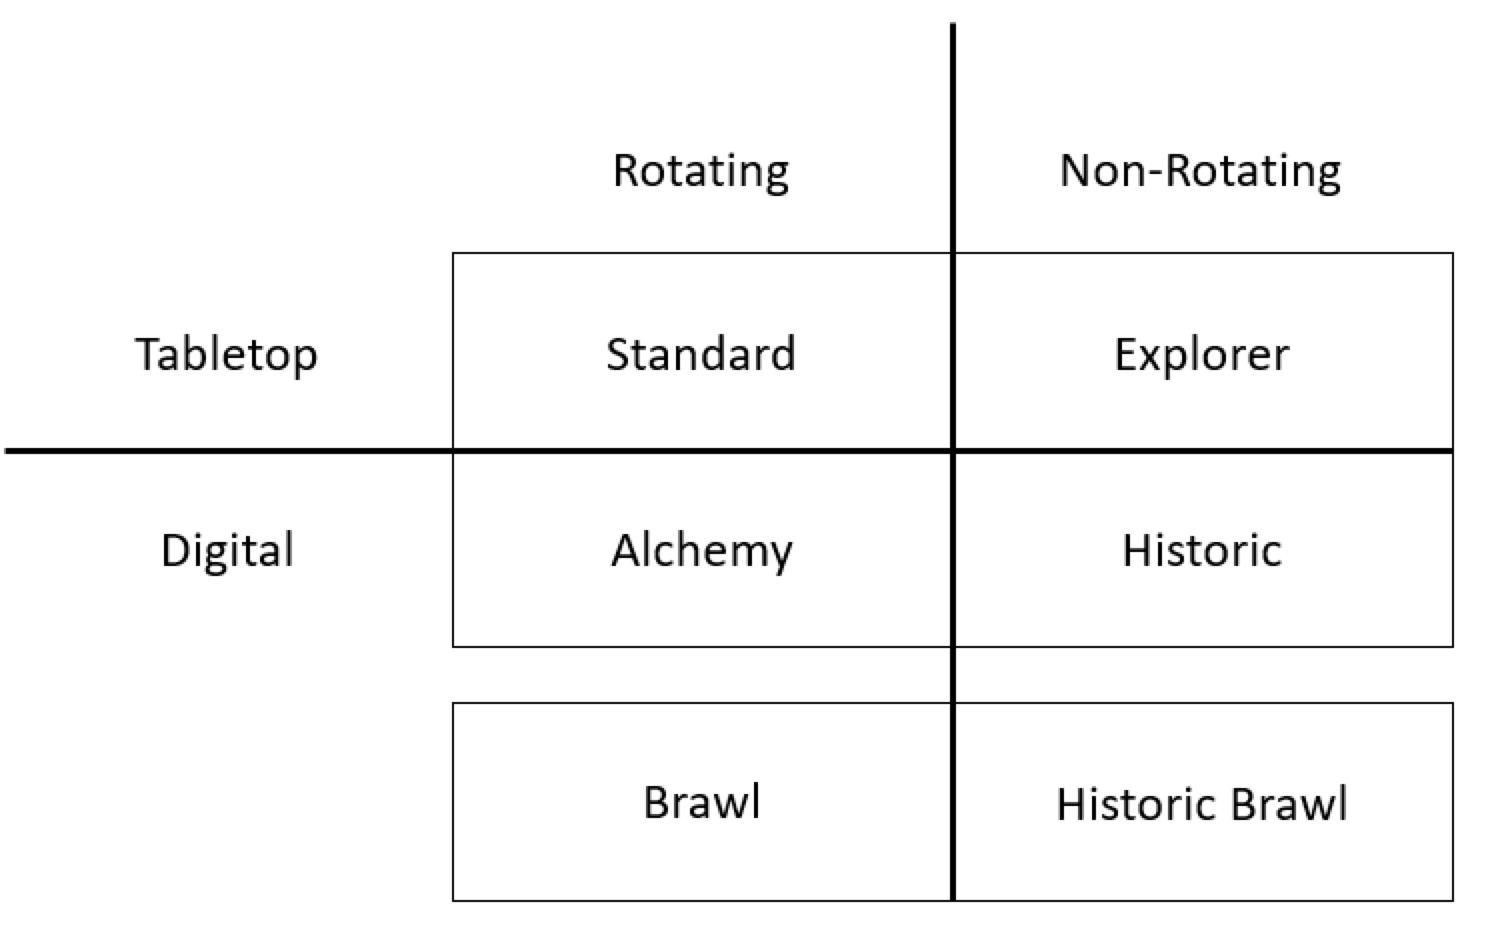 테이블탑과 디지털 형식을 순환(스탠다드, 알케미, 난투)과 비순환(익스플로러, 히스토릭, 히스토릭 난투)으로 분류한 표